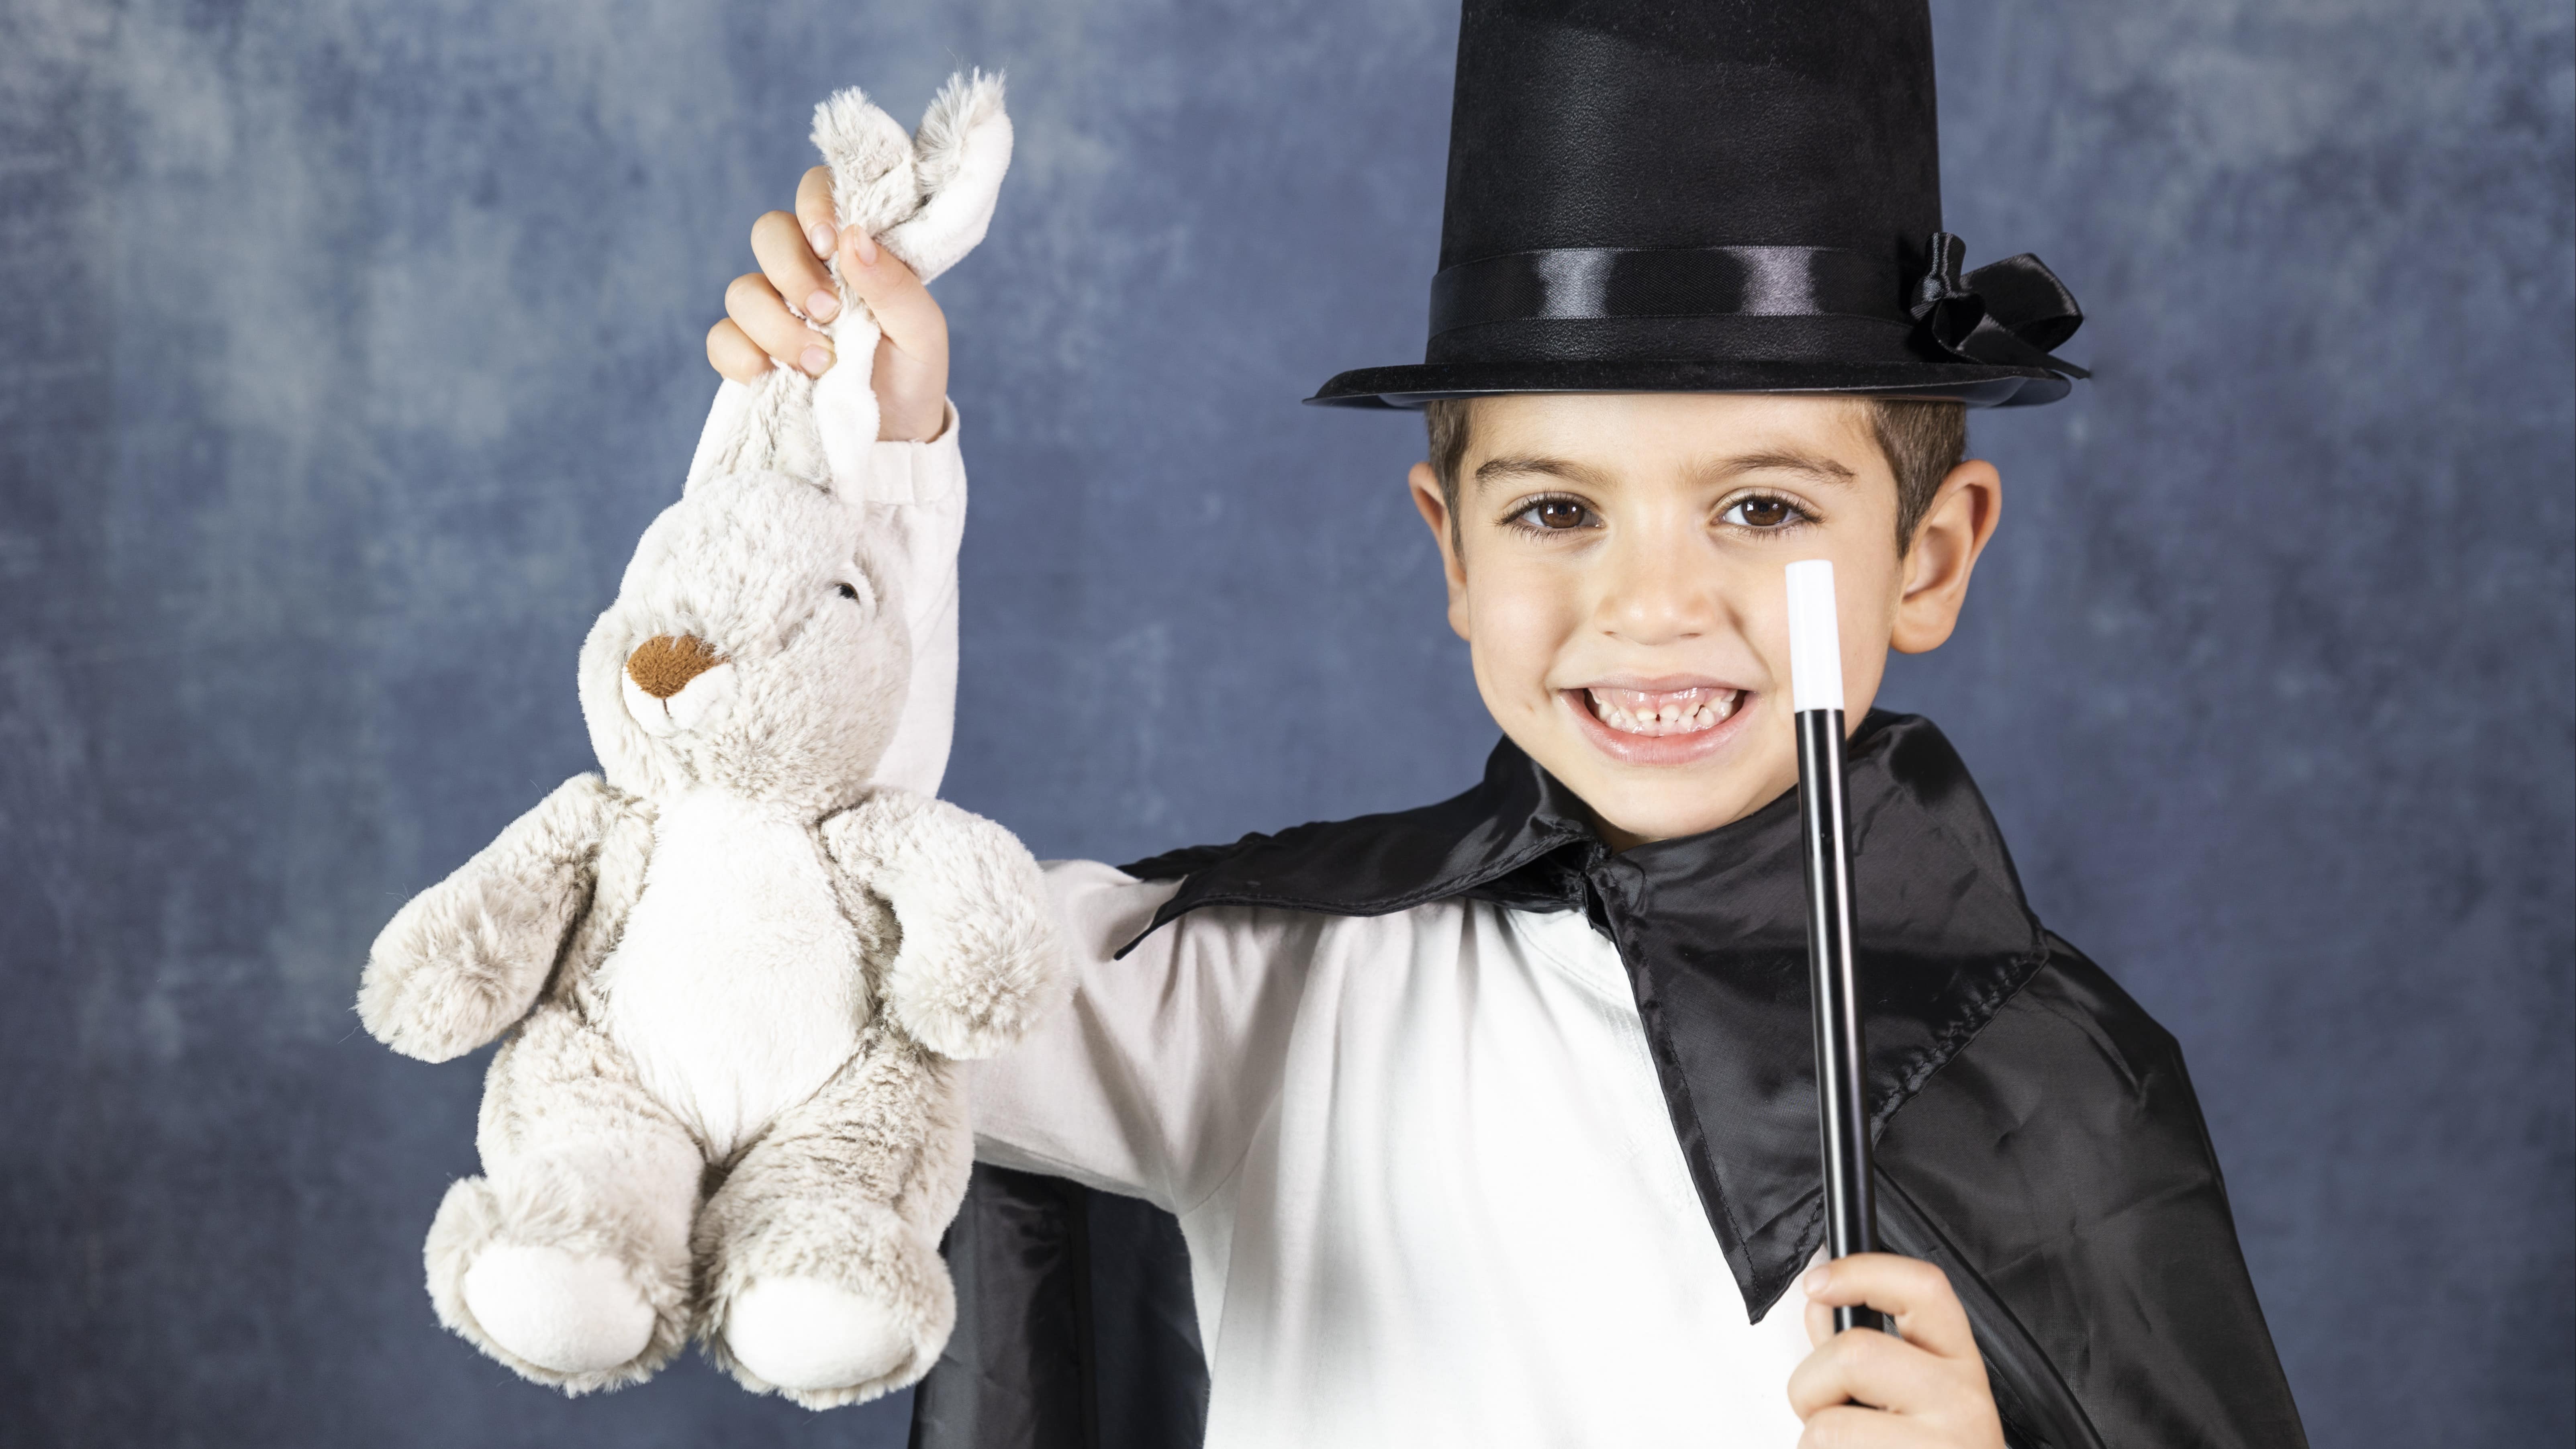 Enfant faisant un tour de magie avec un lapin en peluche qu’il sort d’un chapeau